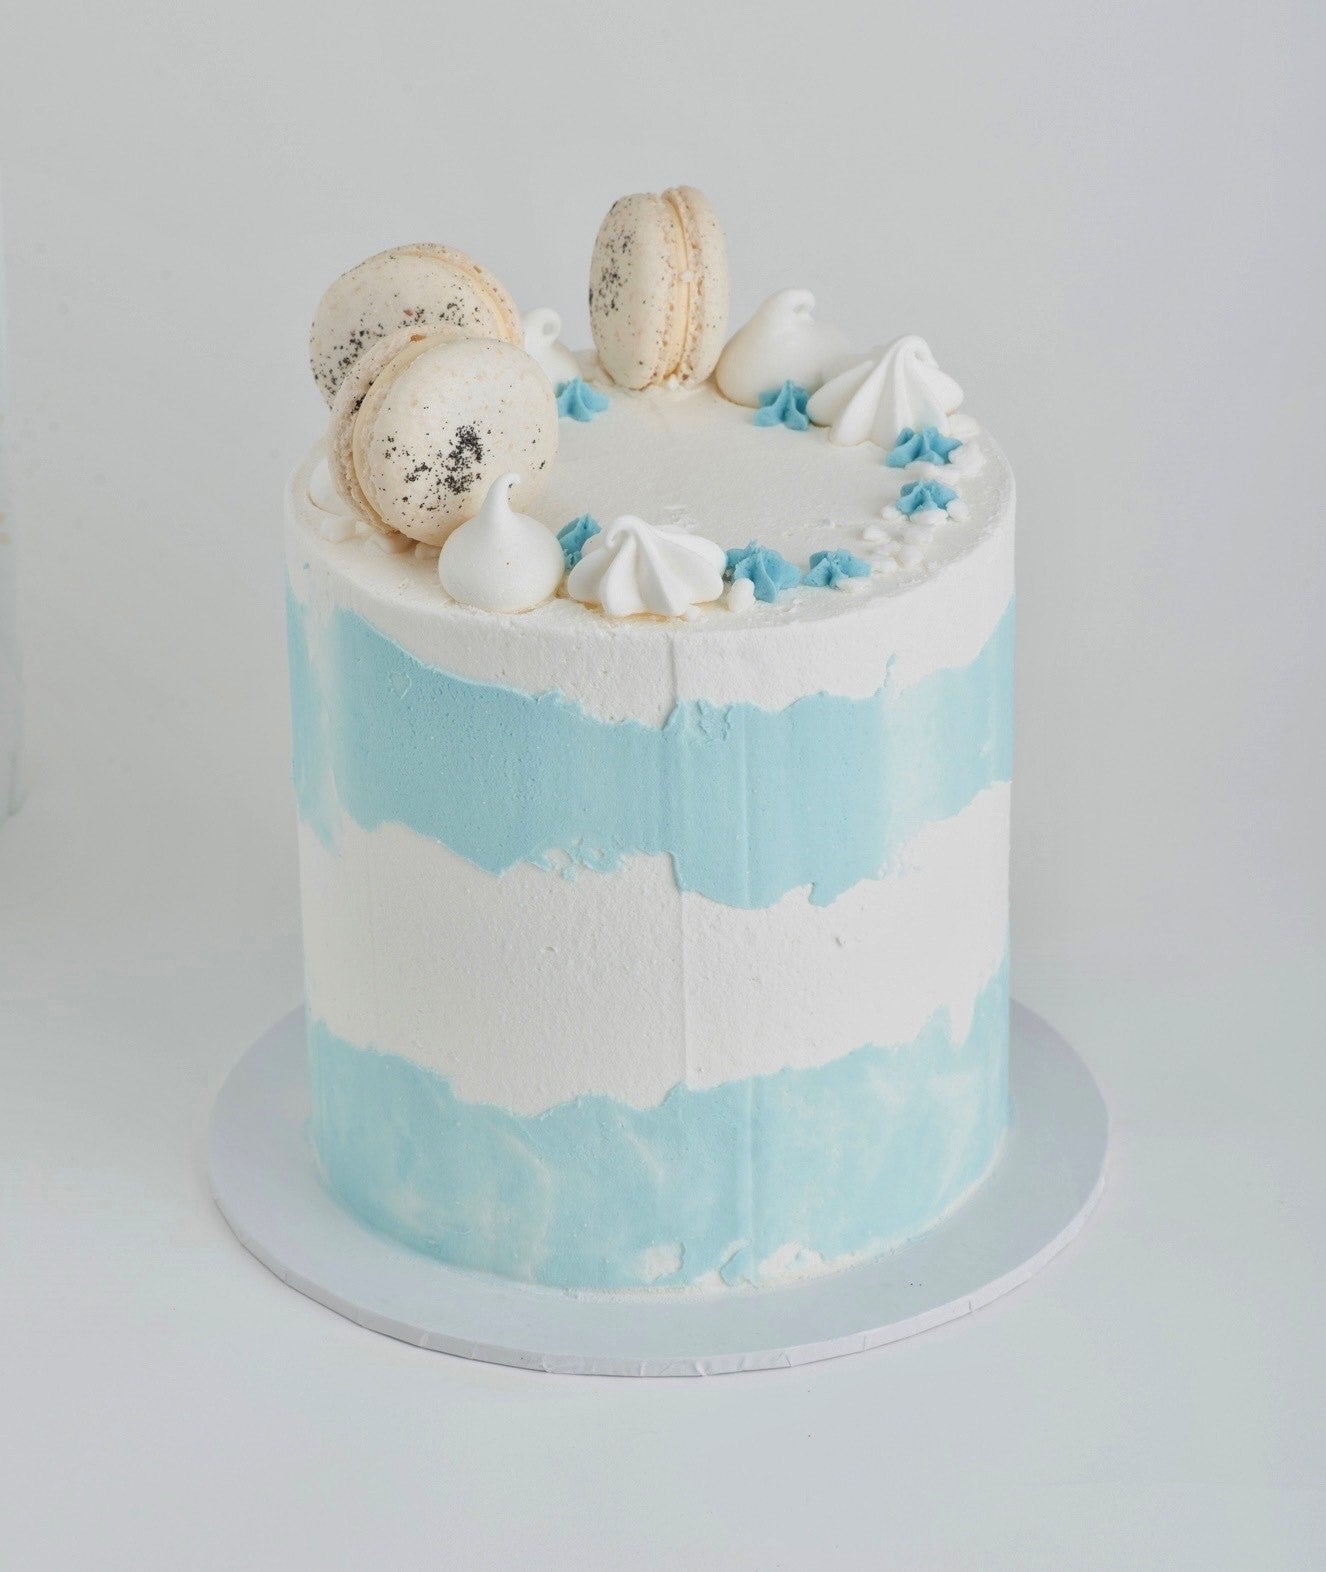 12 Wedding Cake Mistakes With a Baker's Advice on Avoiding Them